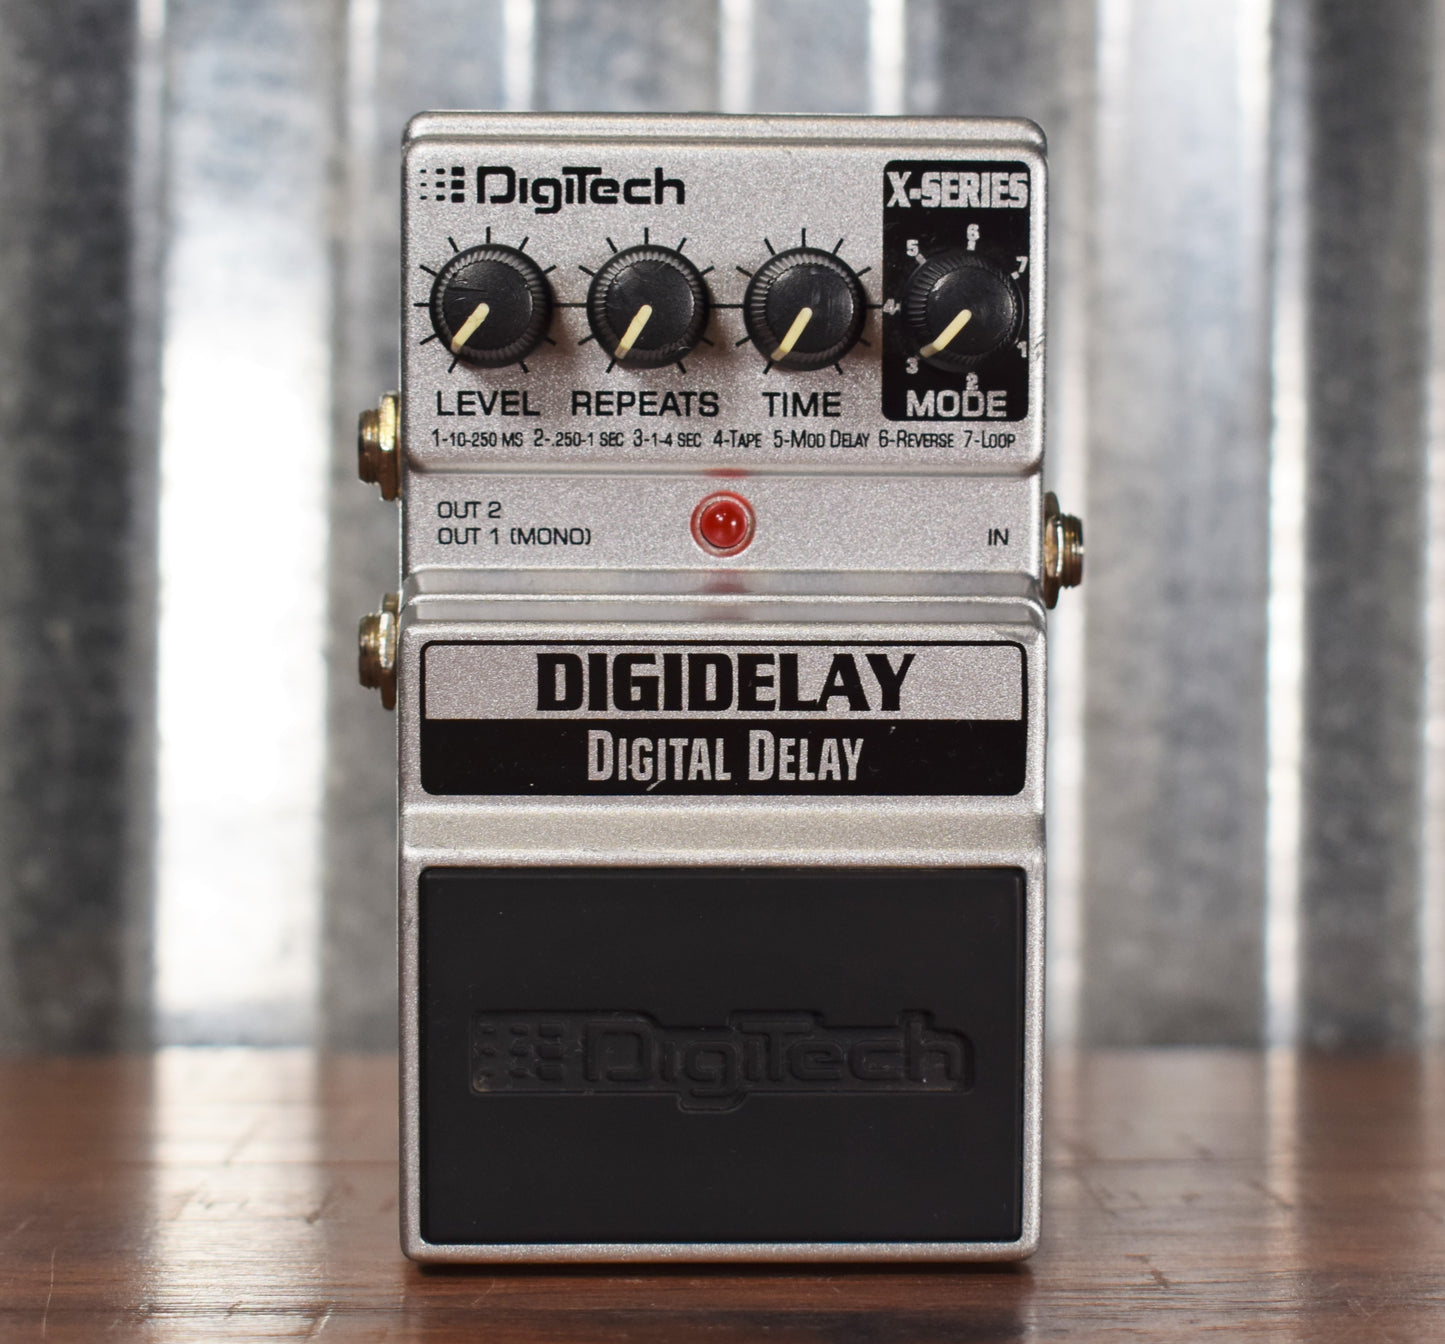 Digitech X Series Digidelay Digital Delay Guitar Effect Pedal Used